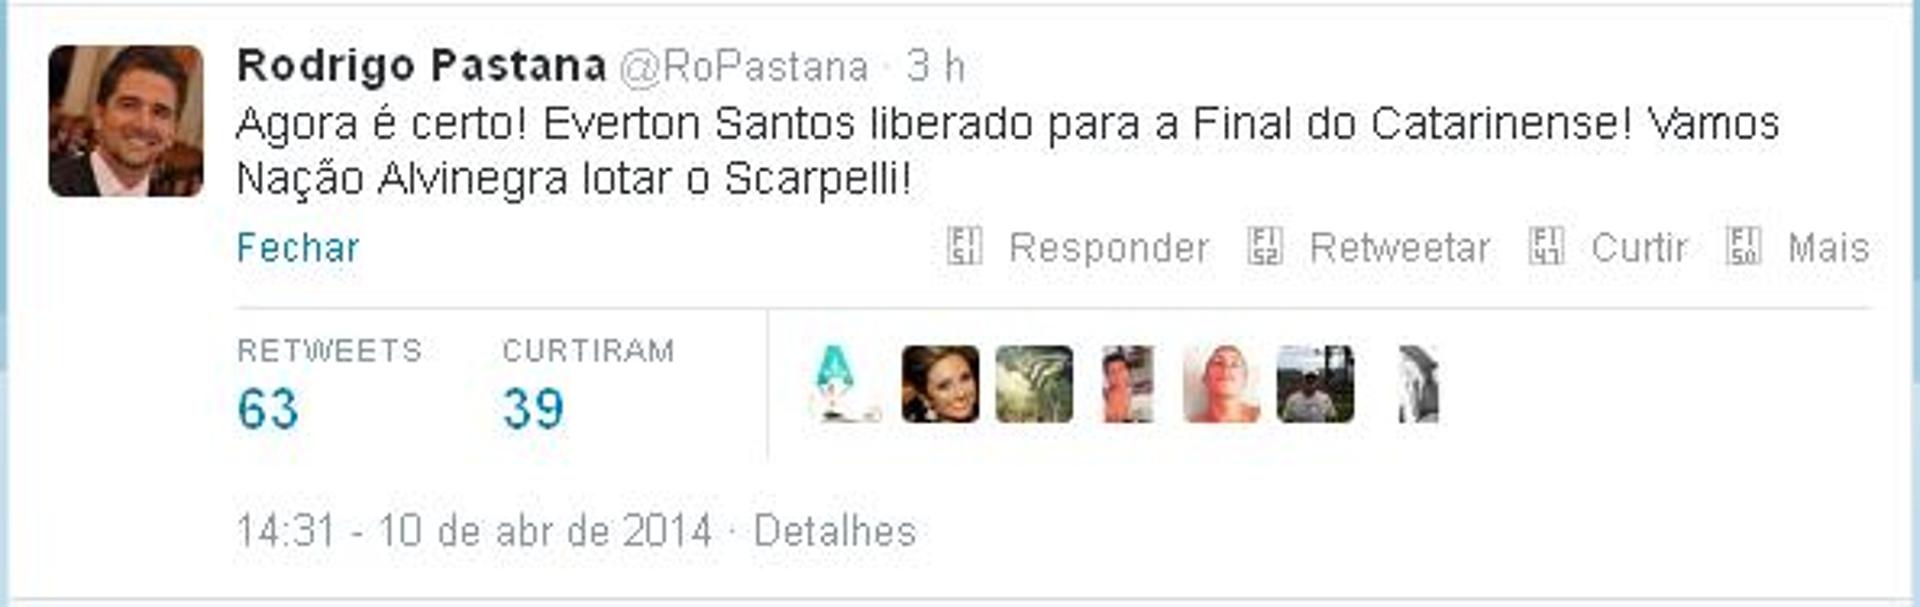 Rodrigo Pastana comemora liberação de Éverton Santos em sua conta no Twitter (Foto: Reprodução)